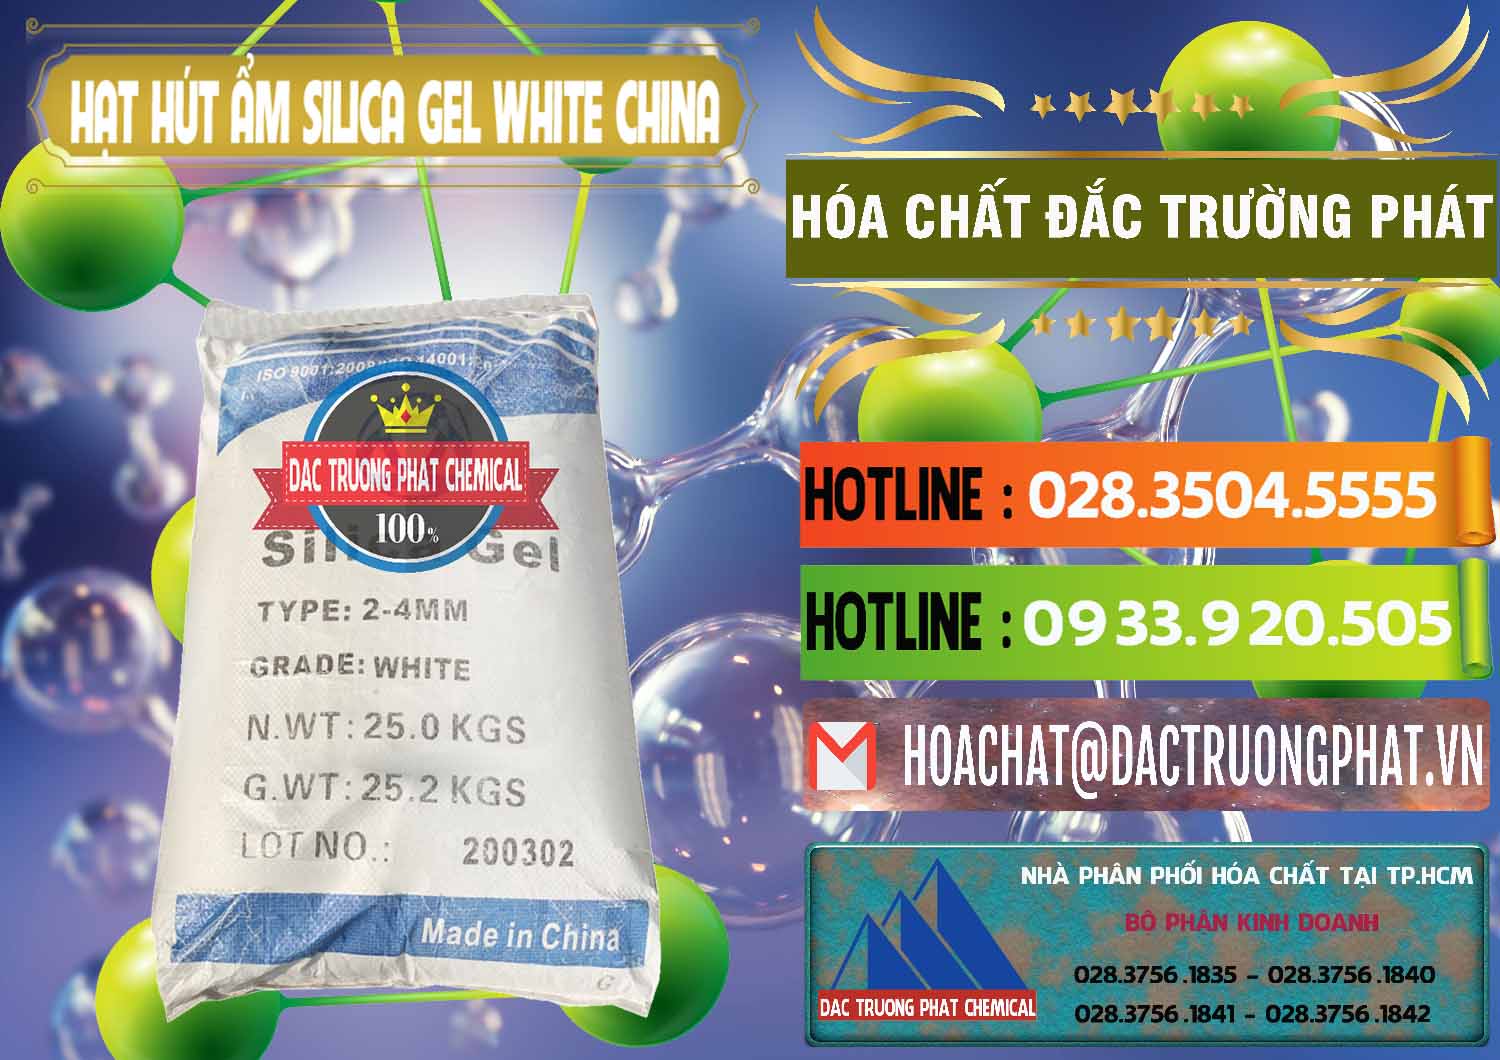 Công ty cung cấp và bán Hạt Hút Ẩm Silica Gel White Trung Quốc China - 0297 - Cty cung cấp - phân phối hóa chất tại TP.HCM - cungcaphoachat.com.vn